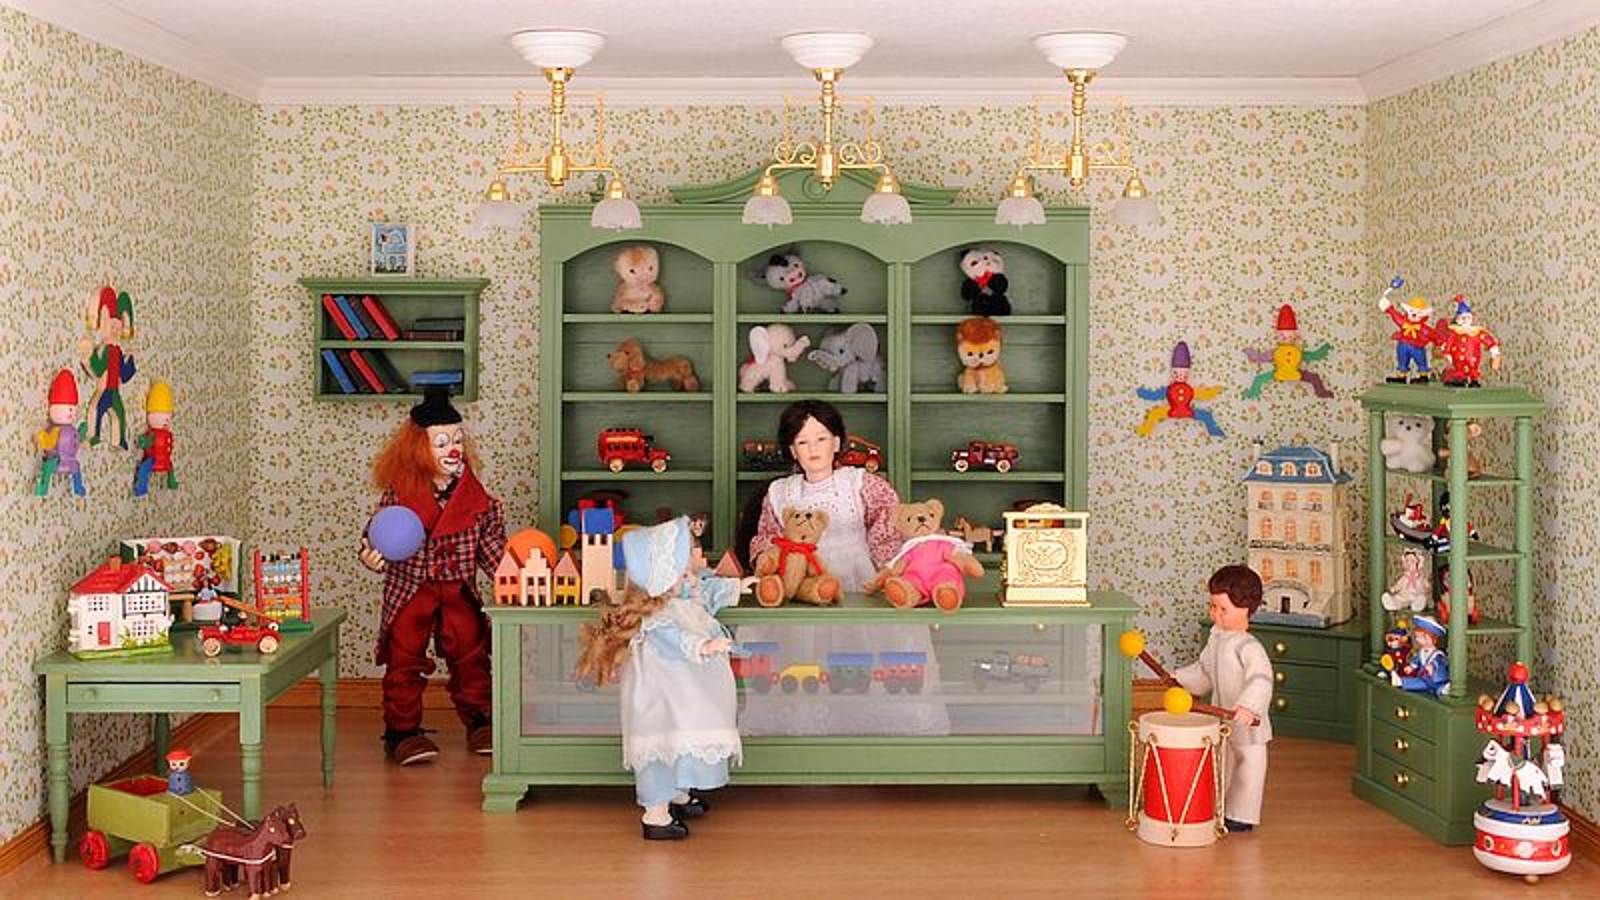 Bausatz-Set - Spielzeugladen - inklusive Lackspray in Reseda-Grün!